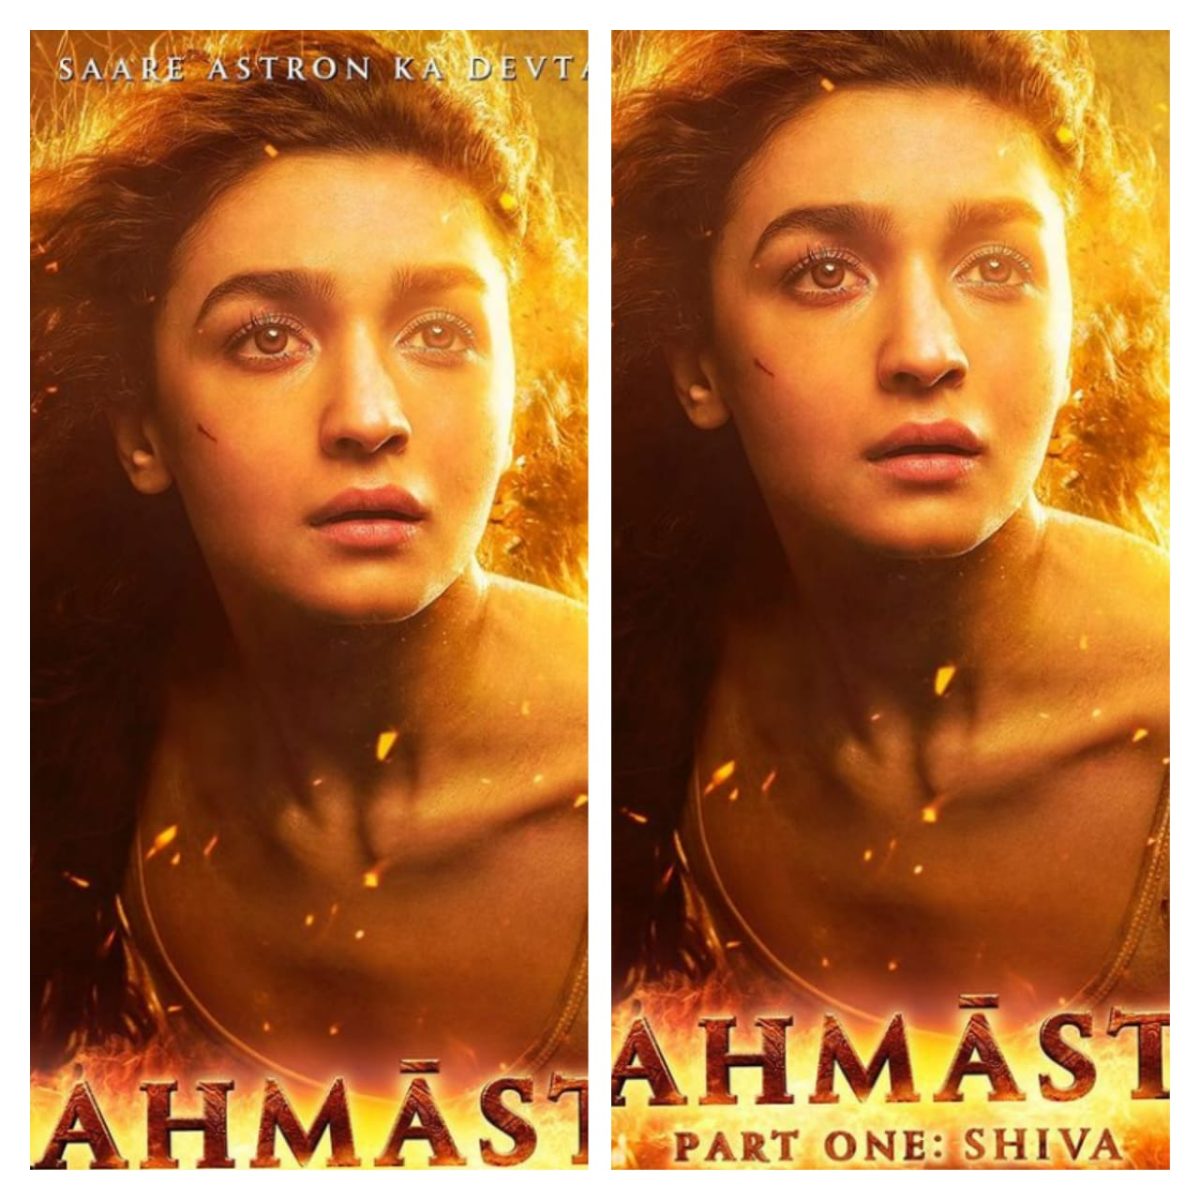 "Brahmastra" फिल्म में आलिया भट्ट की खूबसूरती देख आप भी खो बैठेंगे अपना दिल, देखें तस्वीरें..